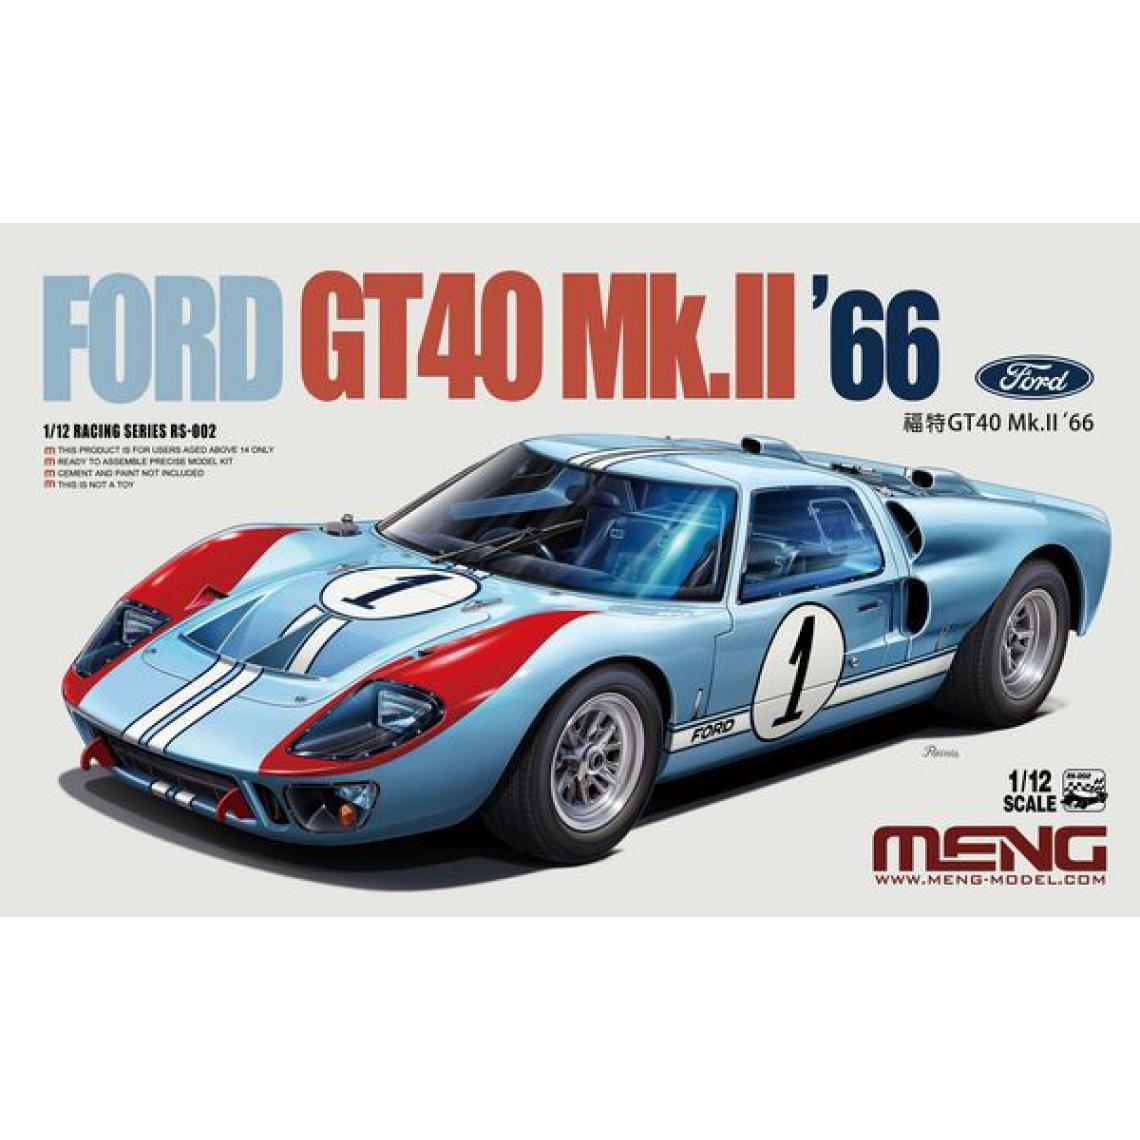 Meng - Ford GT40 Mk.II 66 - 1:12e - MENG-Model - Accessoires et pièces